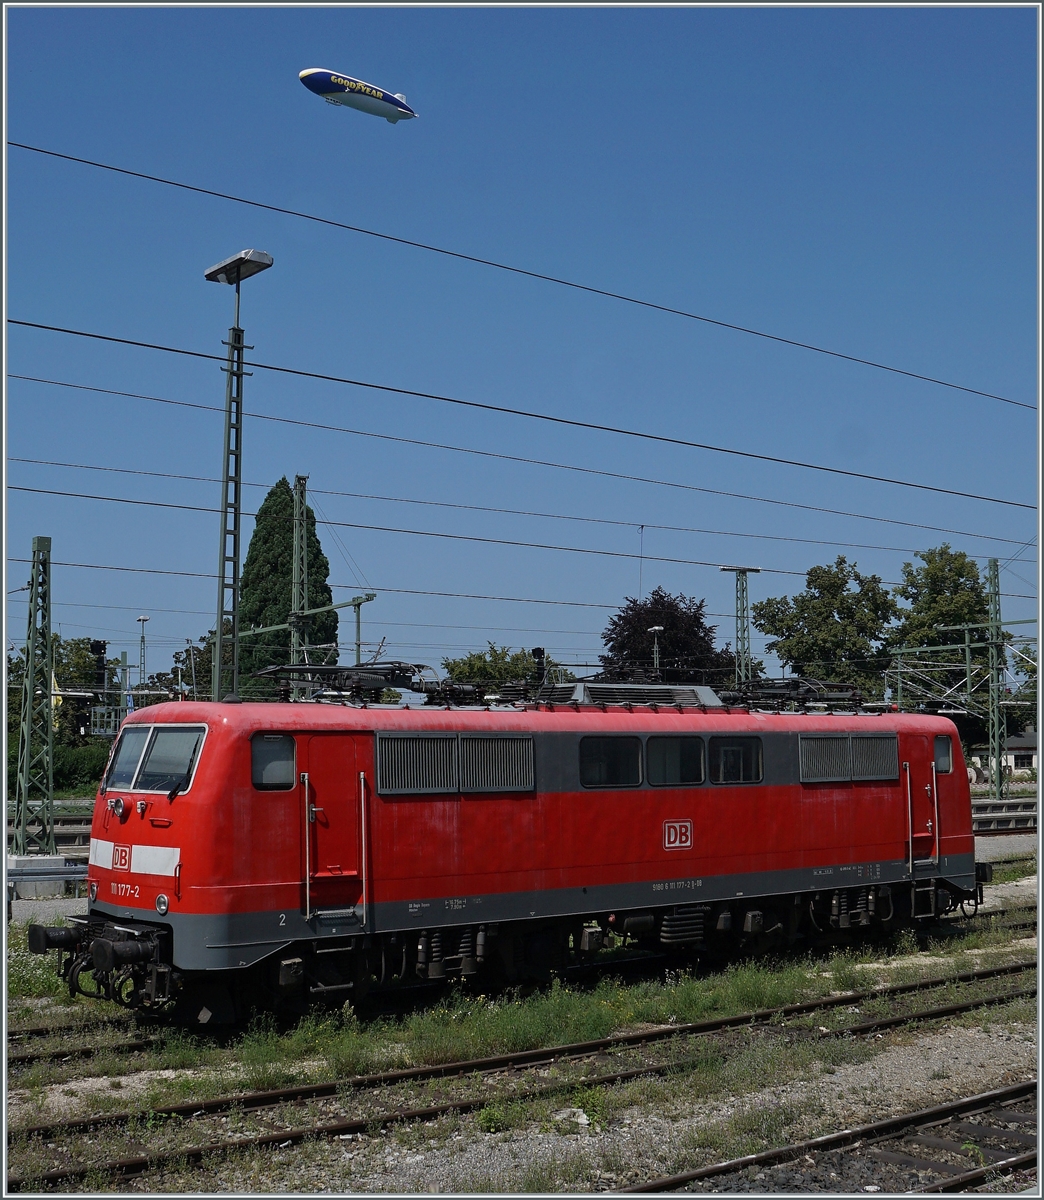 Zeppeline am Himmel von Lindau sind ja alltäglich, aber eine DB 111 auf den Abstellgleisen des Bahnhofs Lindau Insel war mich dann doch ein Bild wert. Leider nur abgebügelt wartet die DB 9180 6 111 177-2 D-DB auf ihren nächsten Einsatz.

14. August 2021